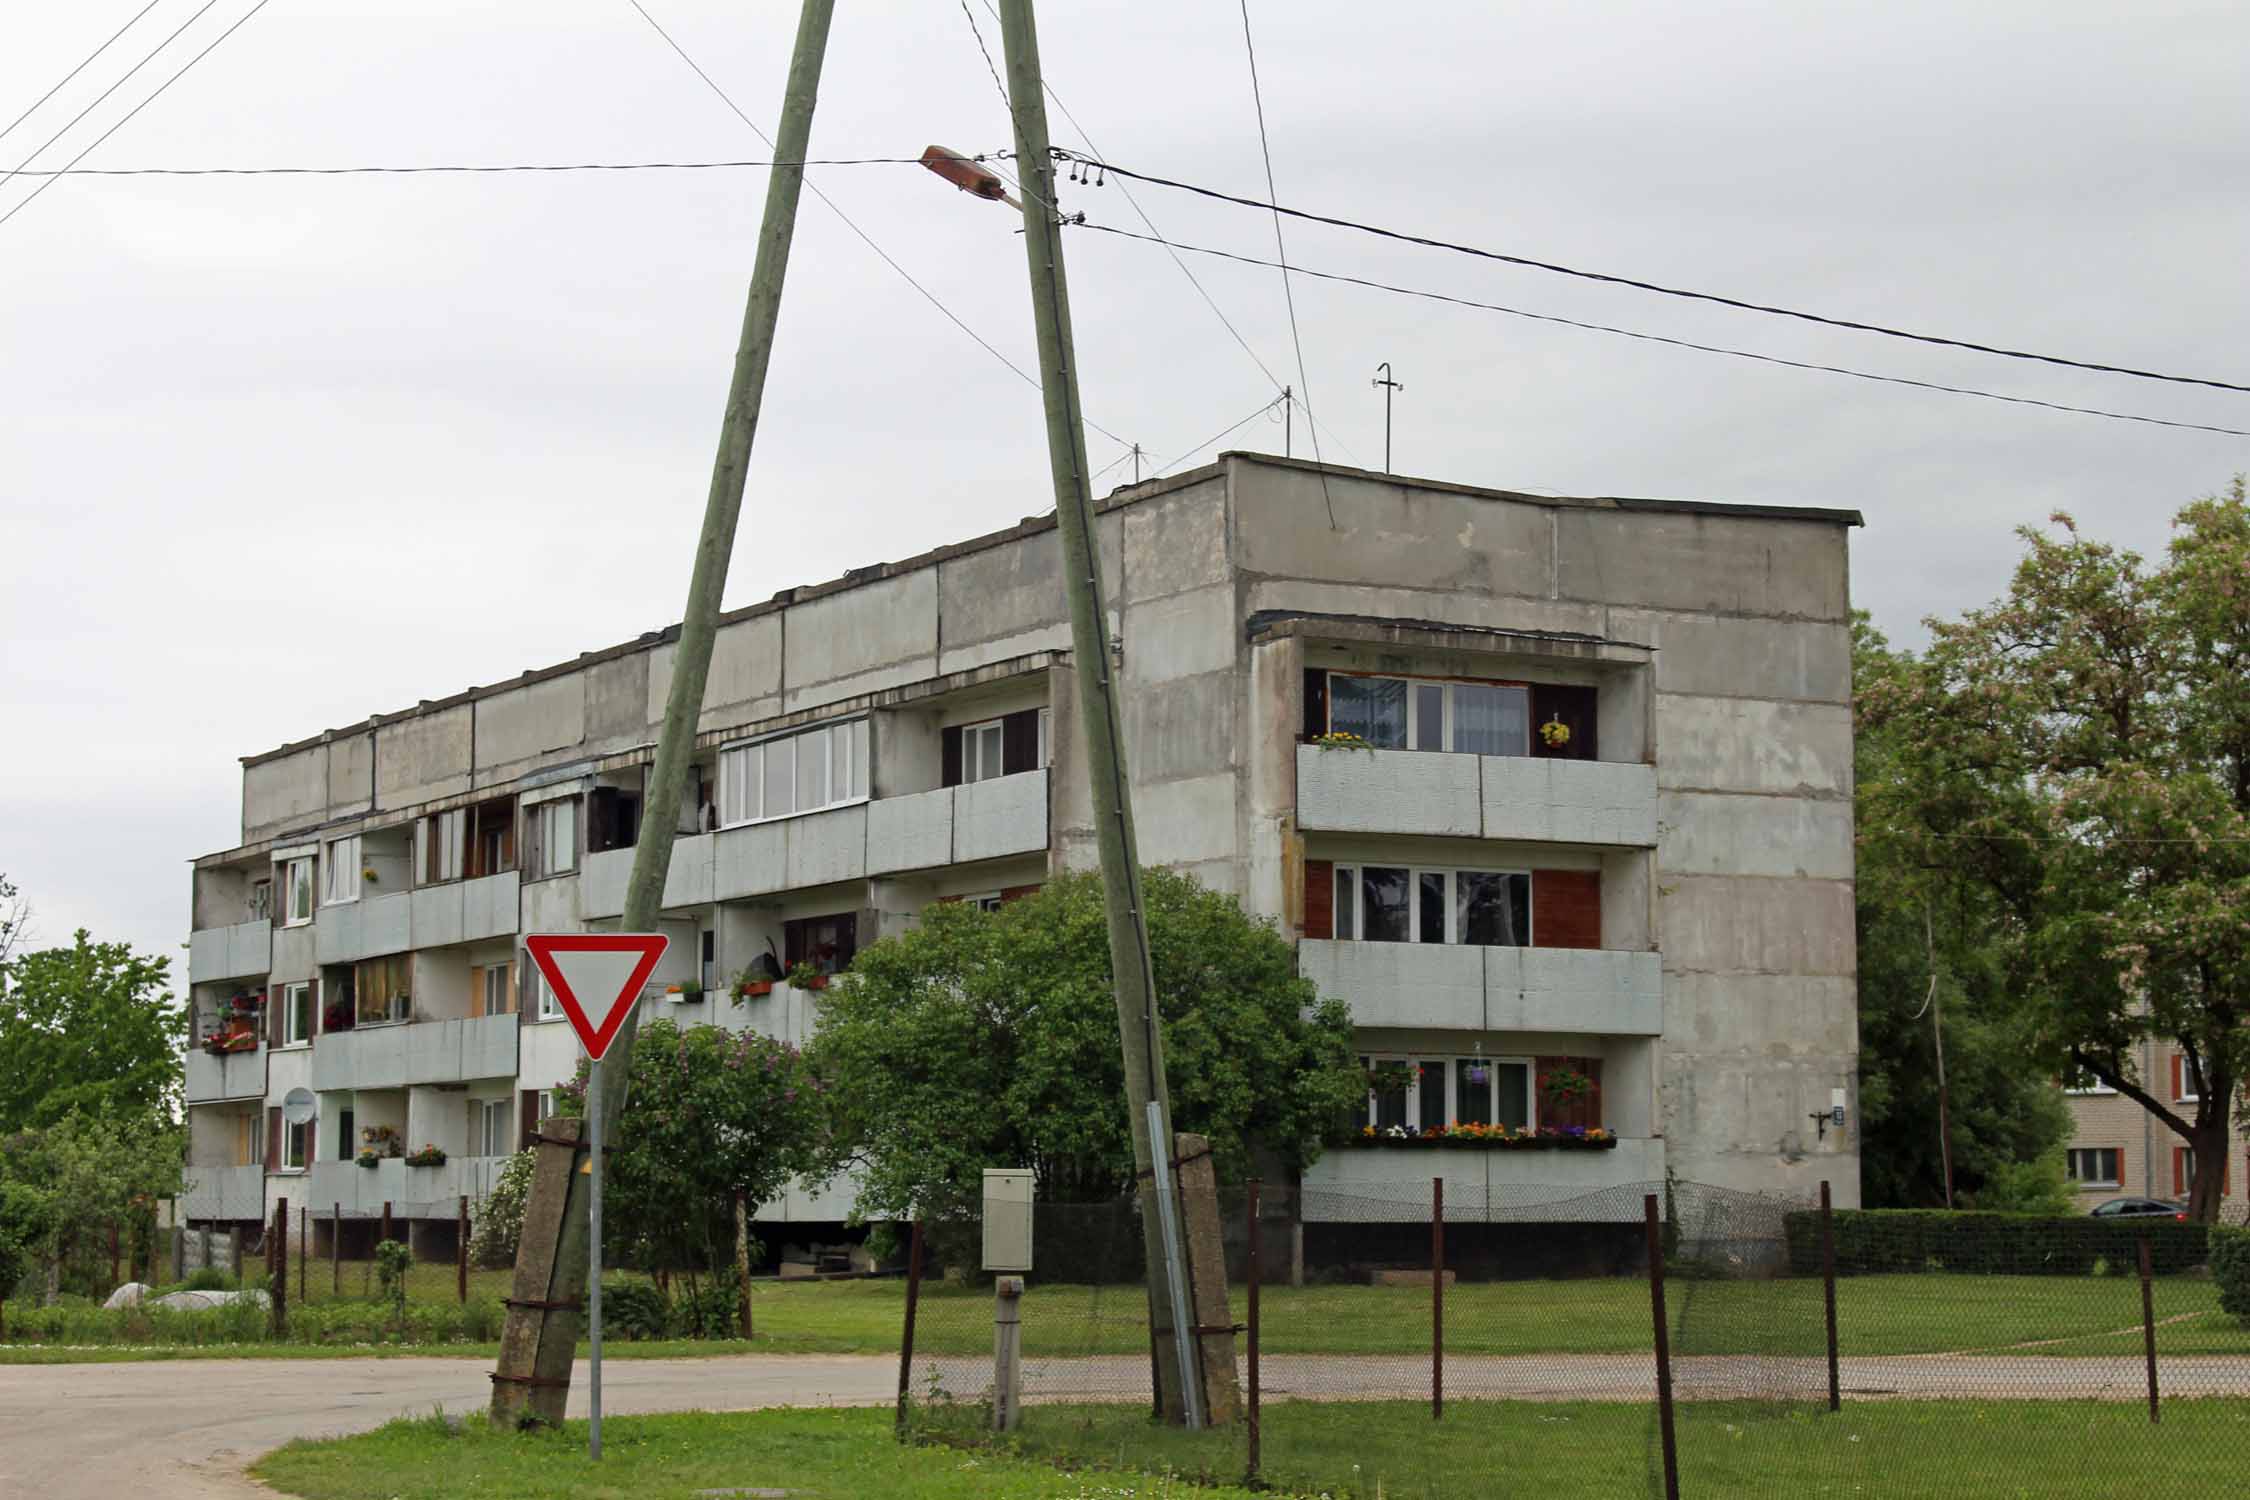 Iecava, bâtiment style soviétique